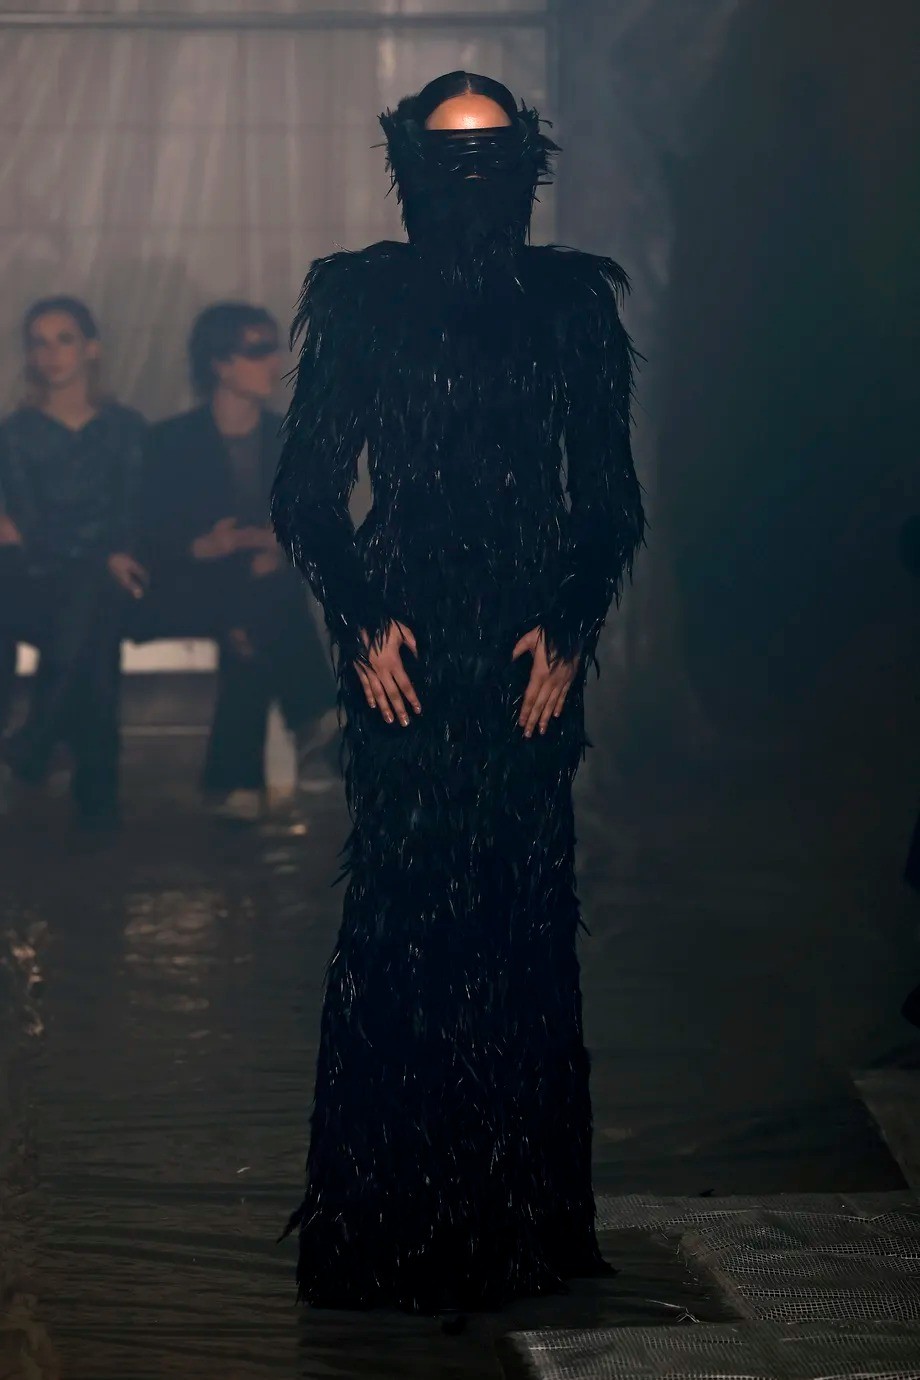 《暗黑破坏神4》主题服装亮相米兰时装周 这服装很地狱